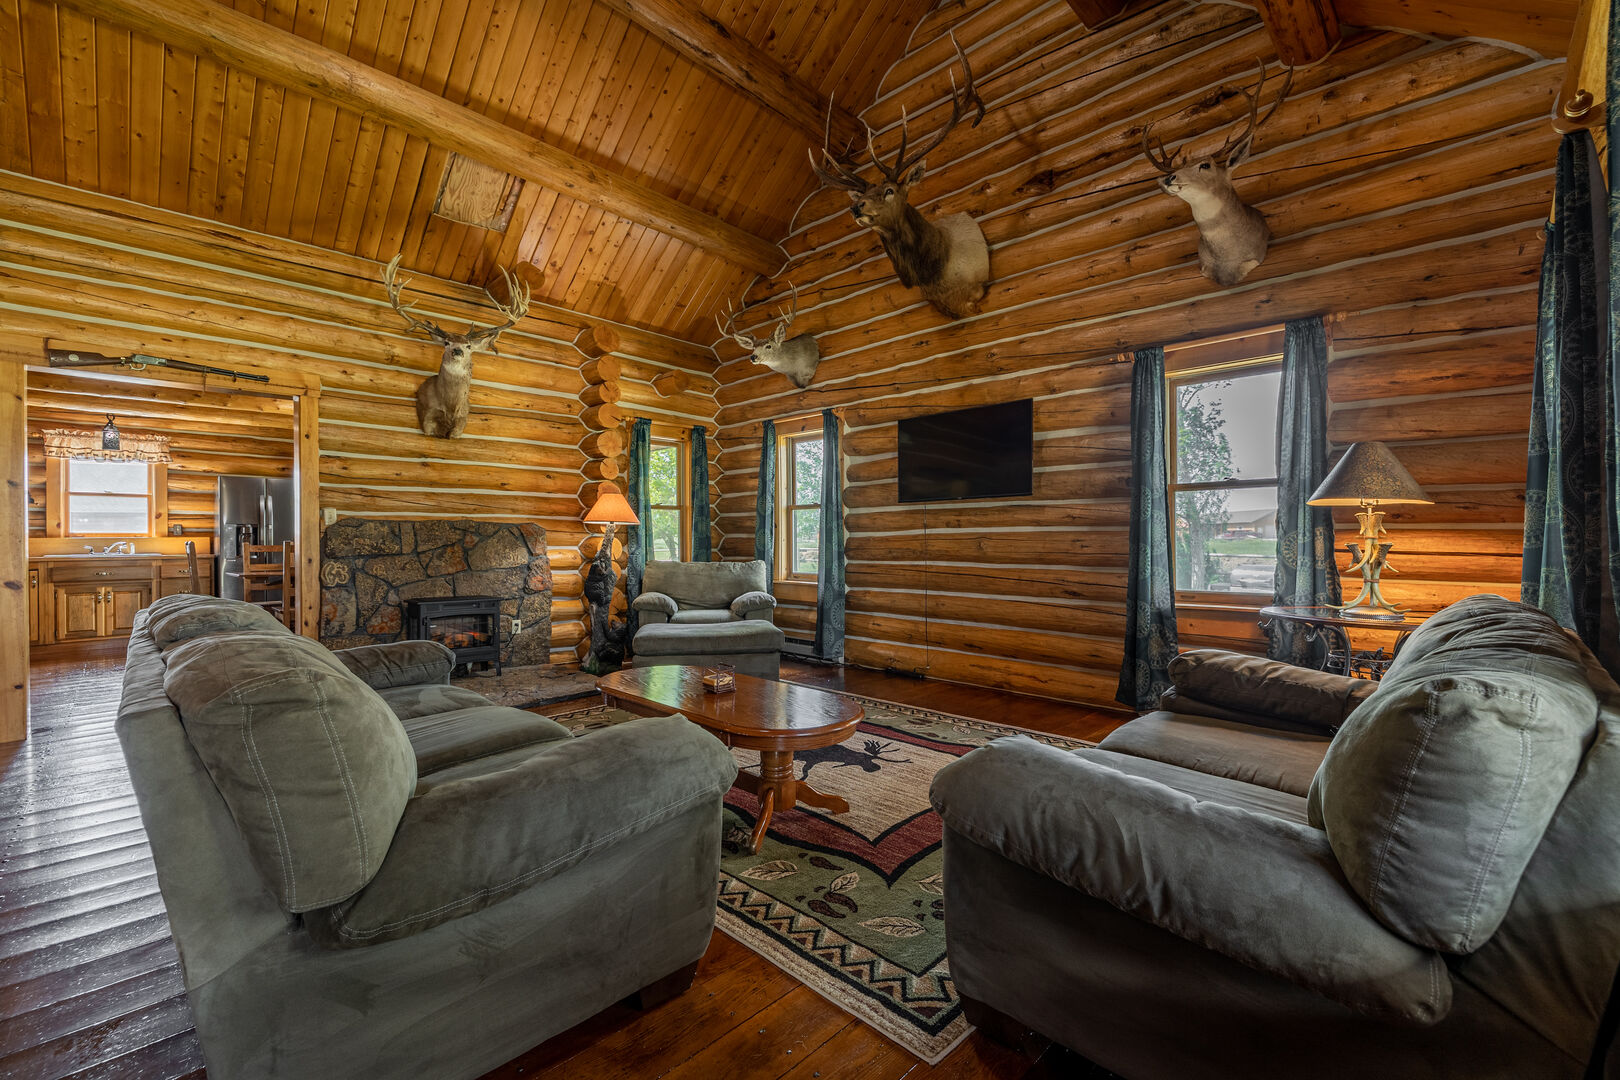 Beautiful rustic cabin feel